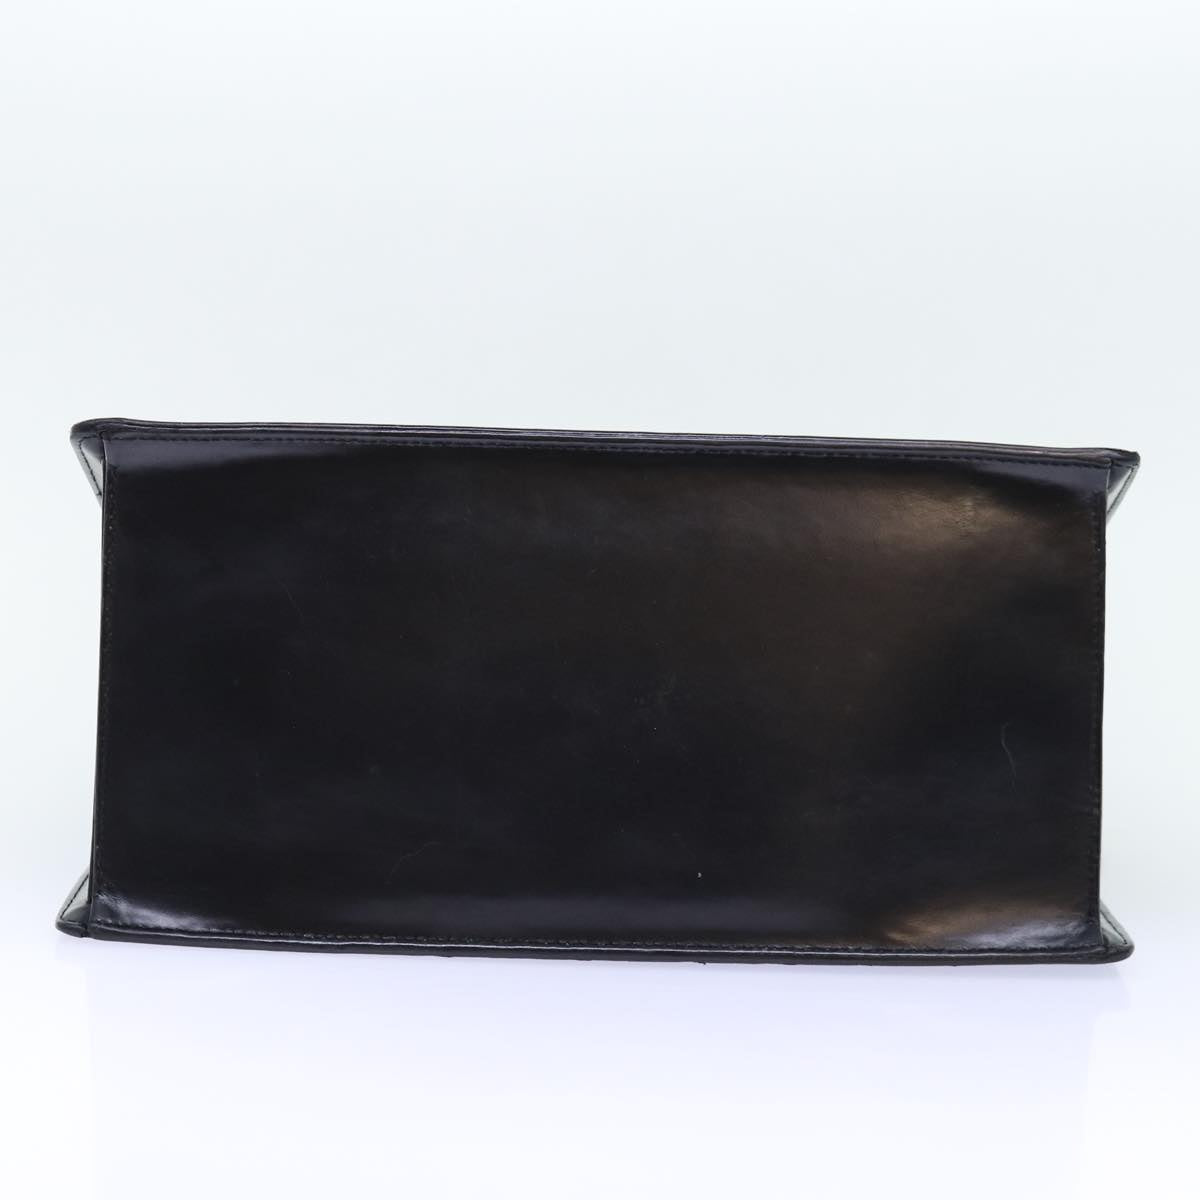 LOUIS VUITTON Epi Riviera Hand Bag Noir Black M48182 LV Auth bs14177